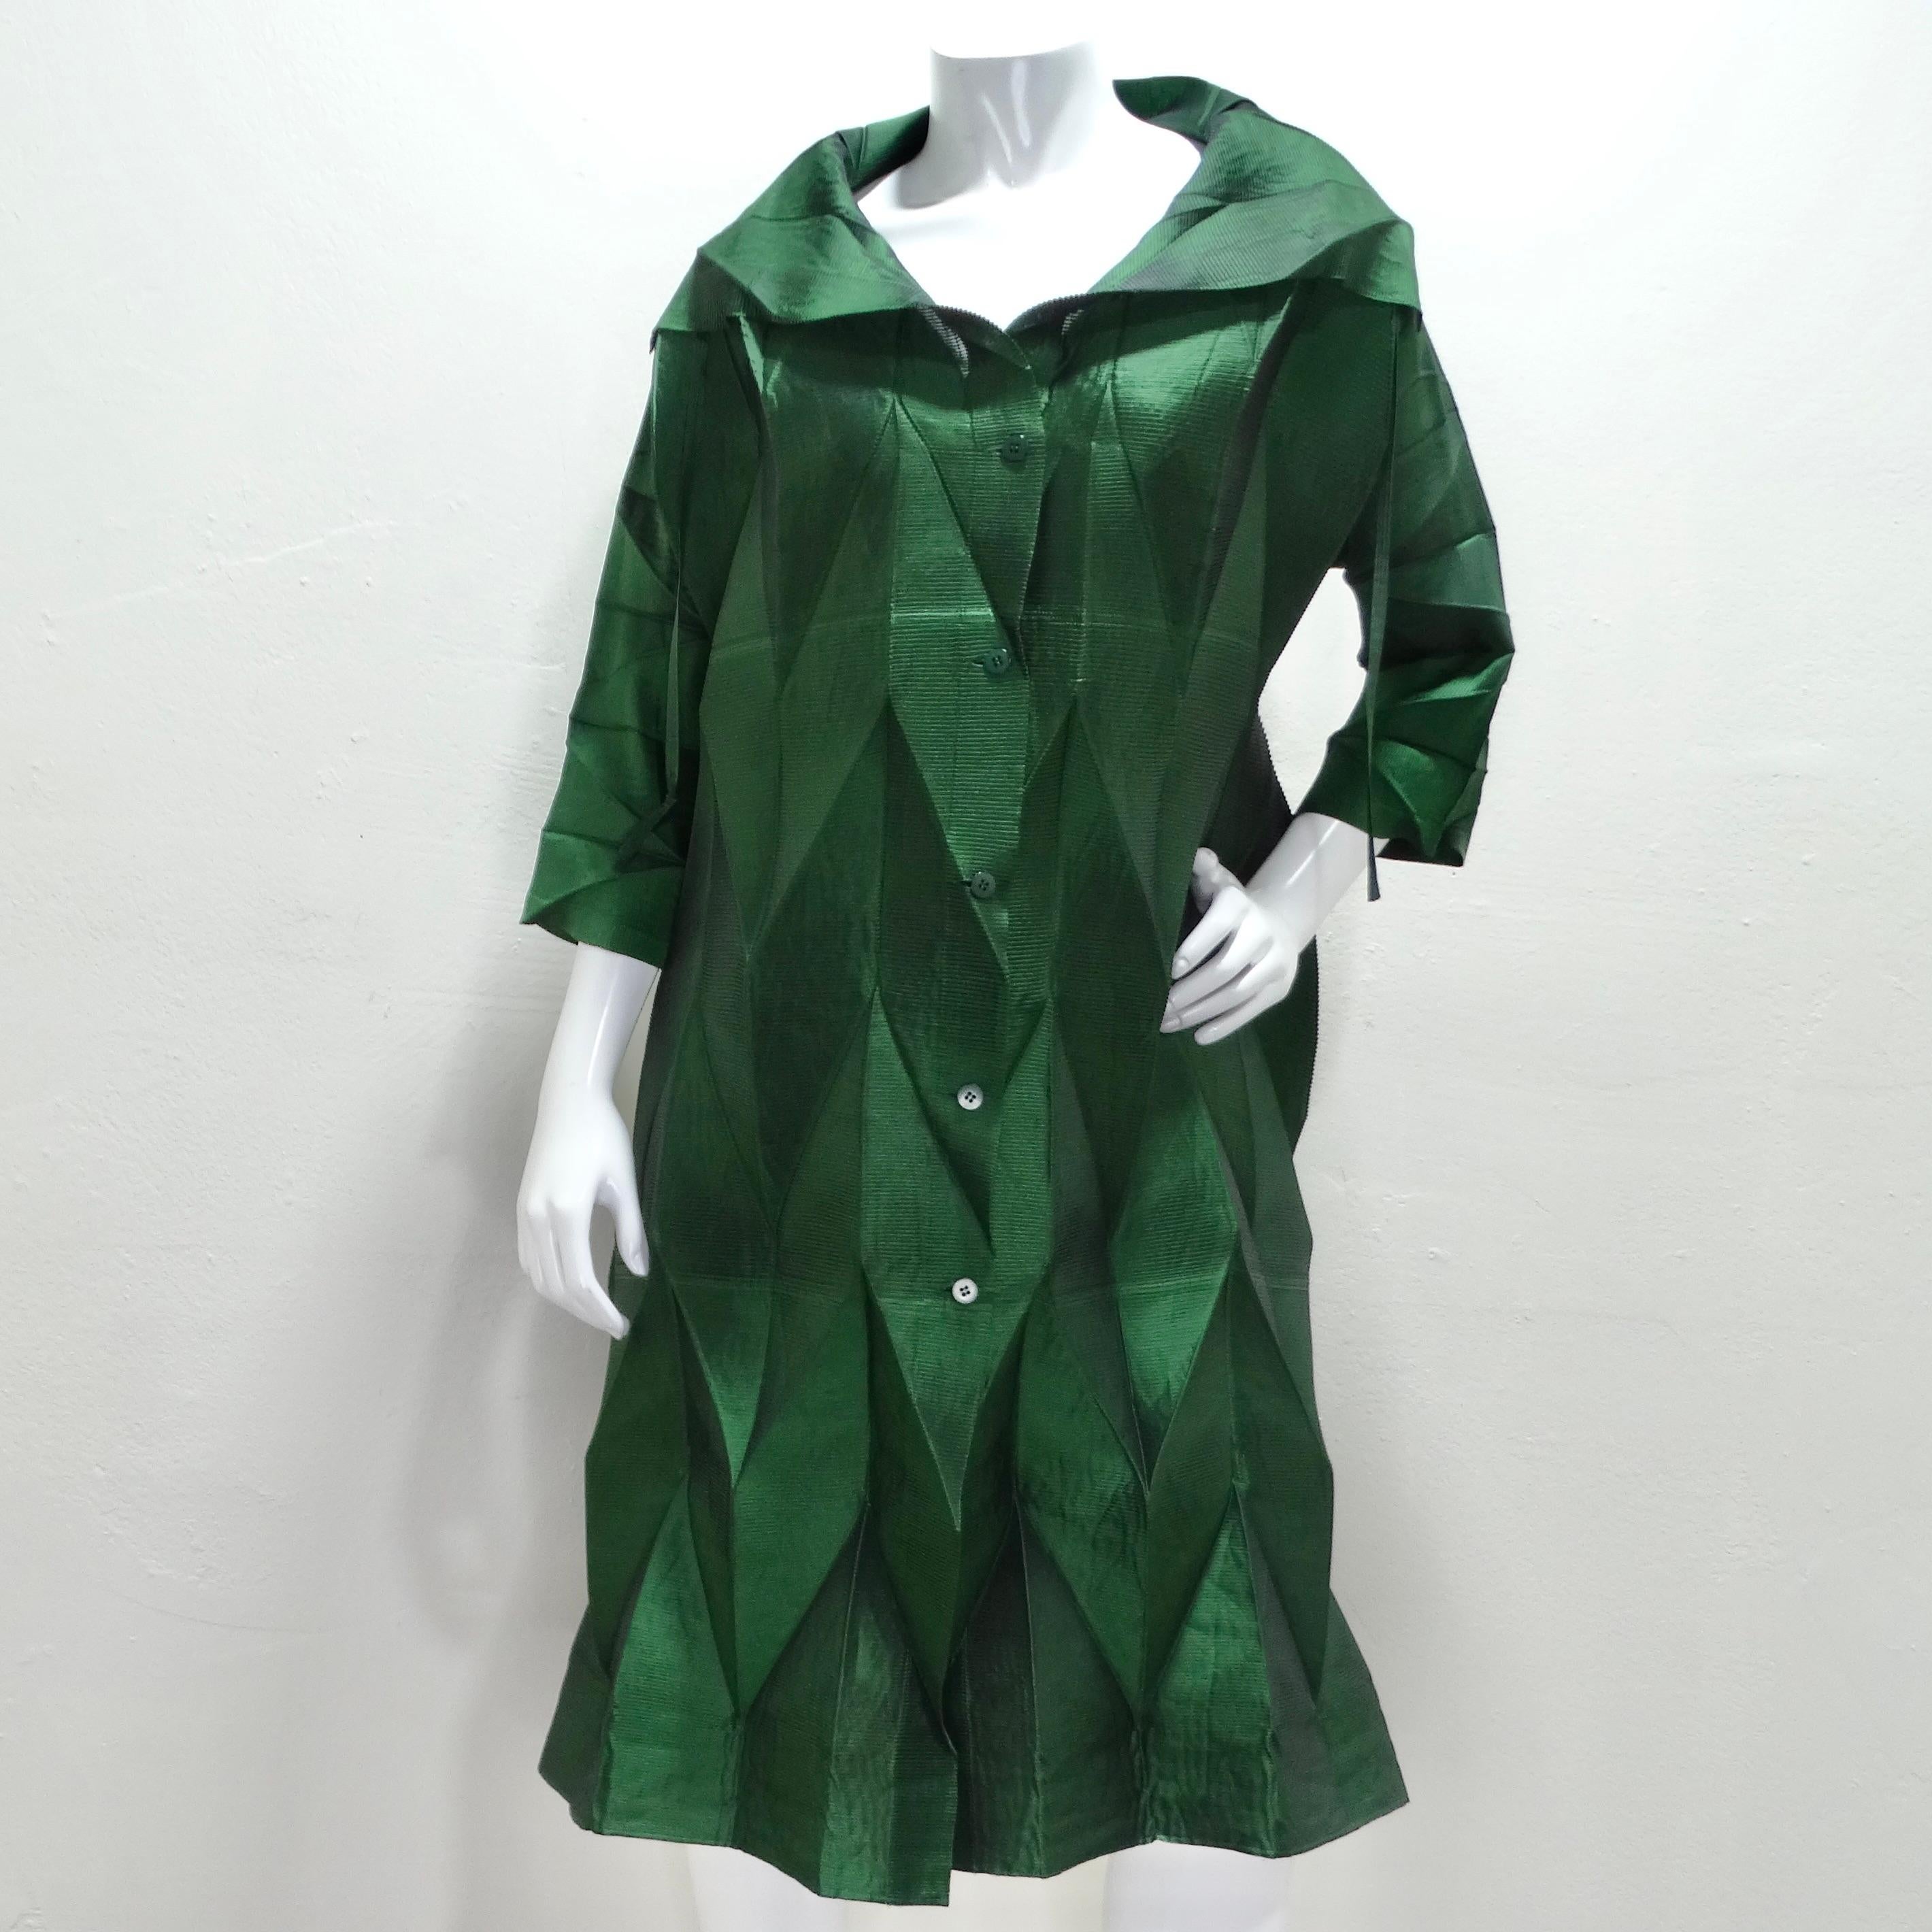 La robe plissée verte du défilé printemps 2008 d'Issey Miyake est une pièce frappante et innovante qui incarne l'expertise du créateur en matière de plissage et de manipulation des textiles. La couleur vert émeraude confère à cette robe un aspect